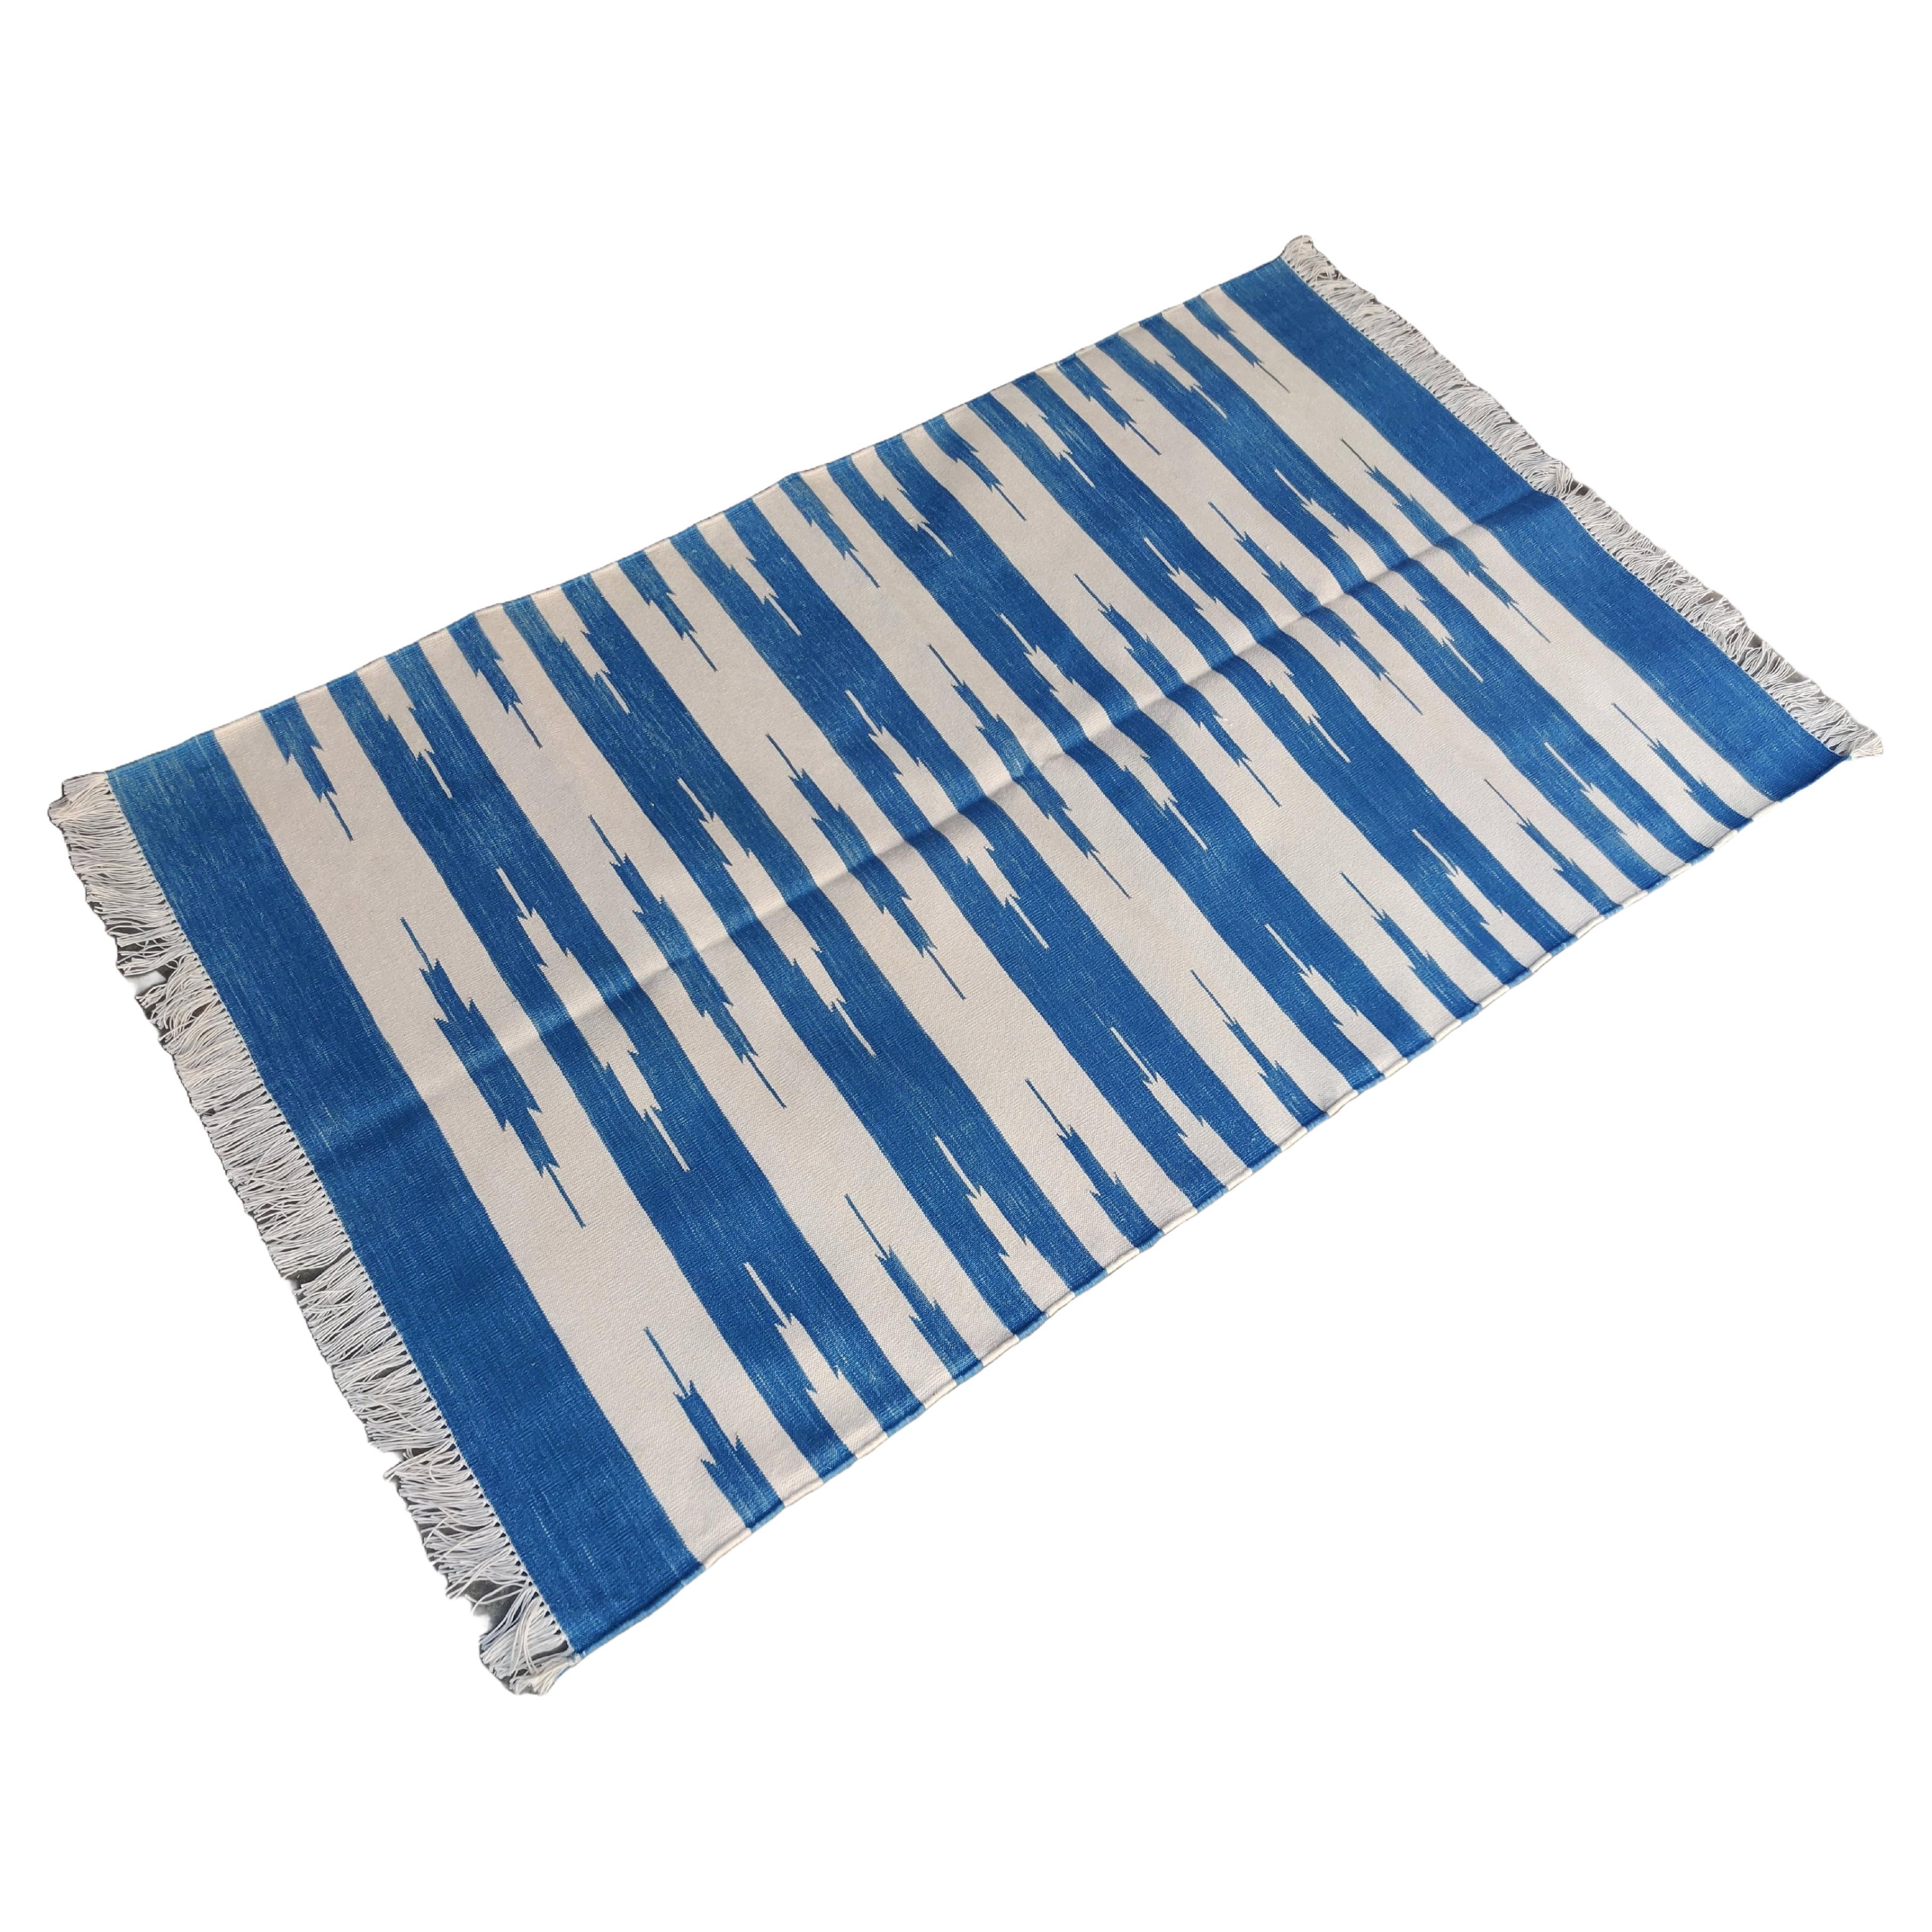 Handgefertigter Flachgewebe-Teppich aus Baumwolle, 3x5 Blau und Weiß gestreifter indischer Dhurrie